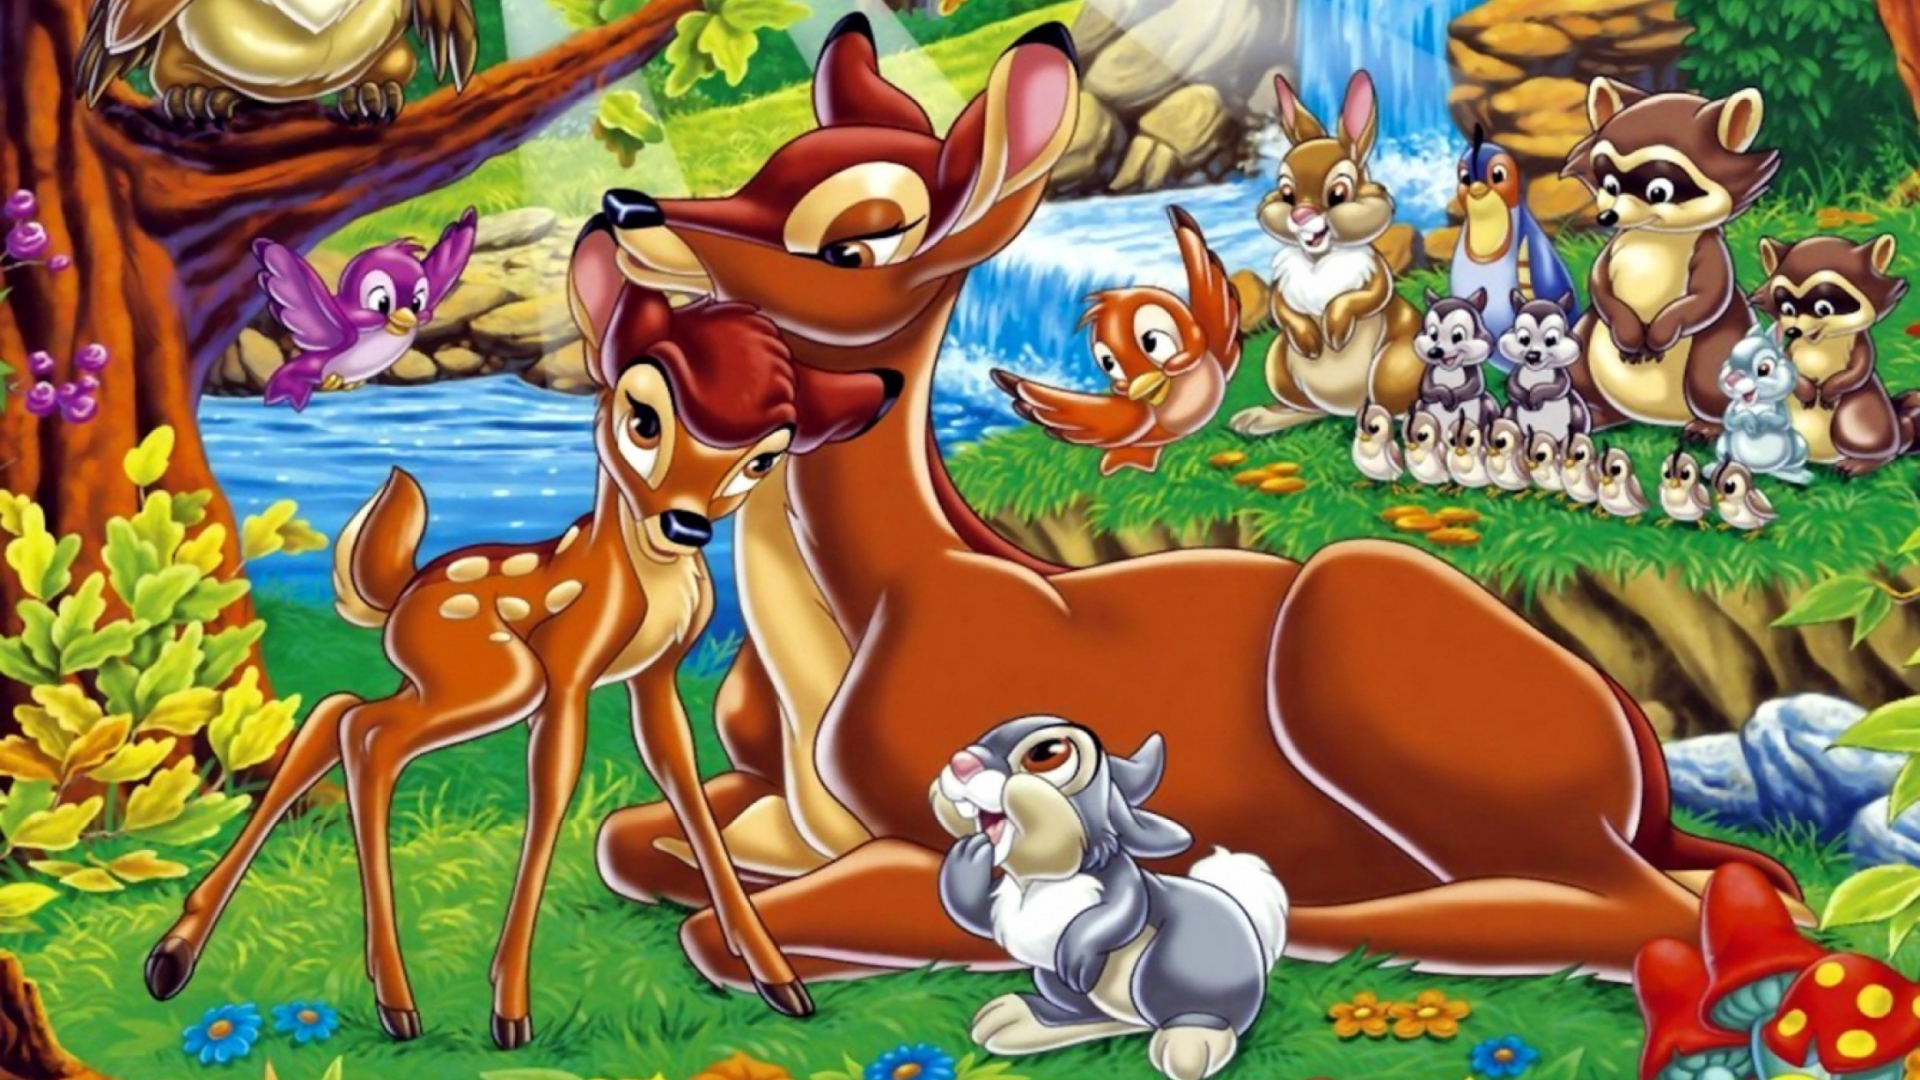 Disney Bambi wallpaper 1920x1080